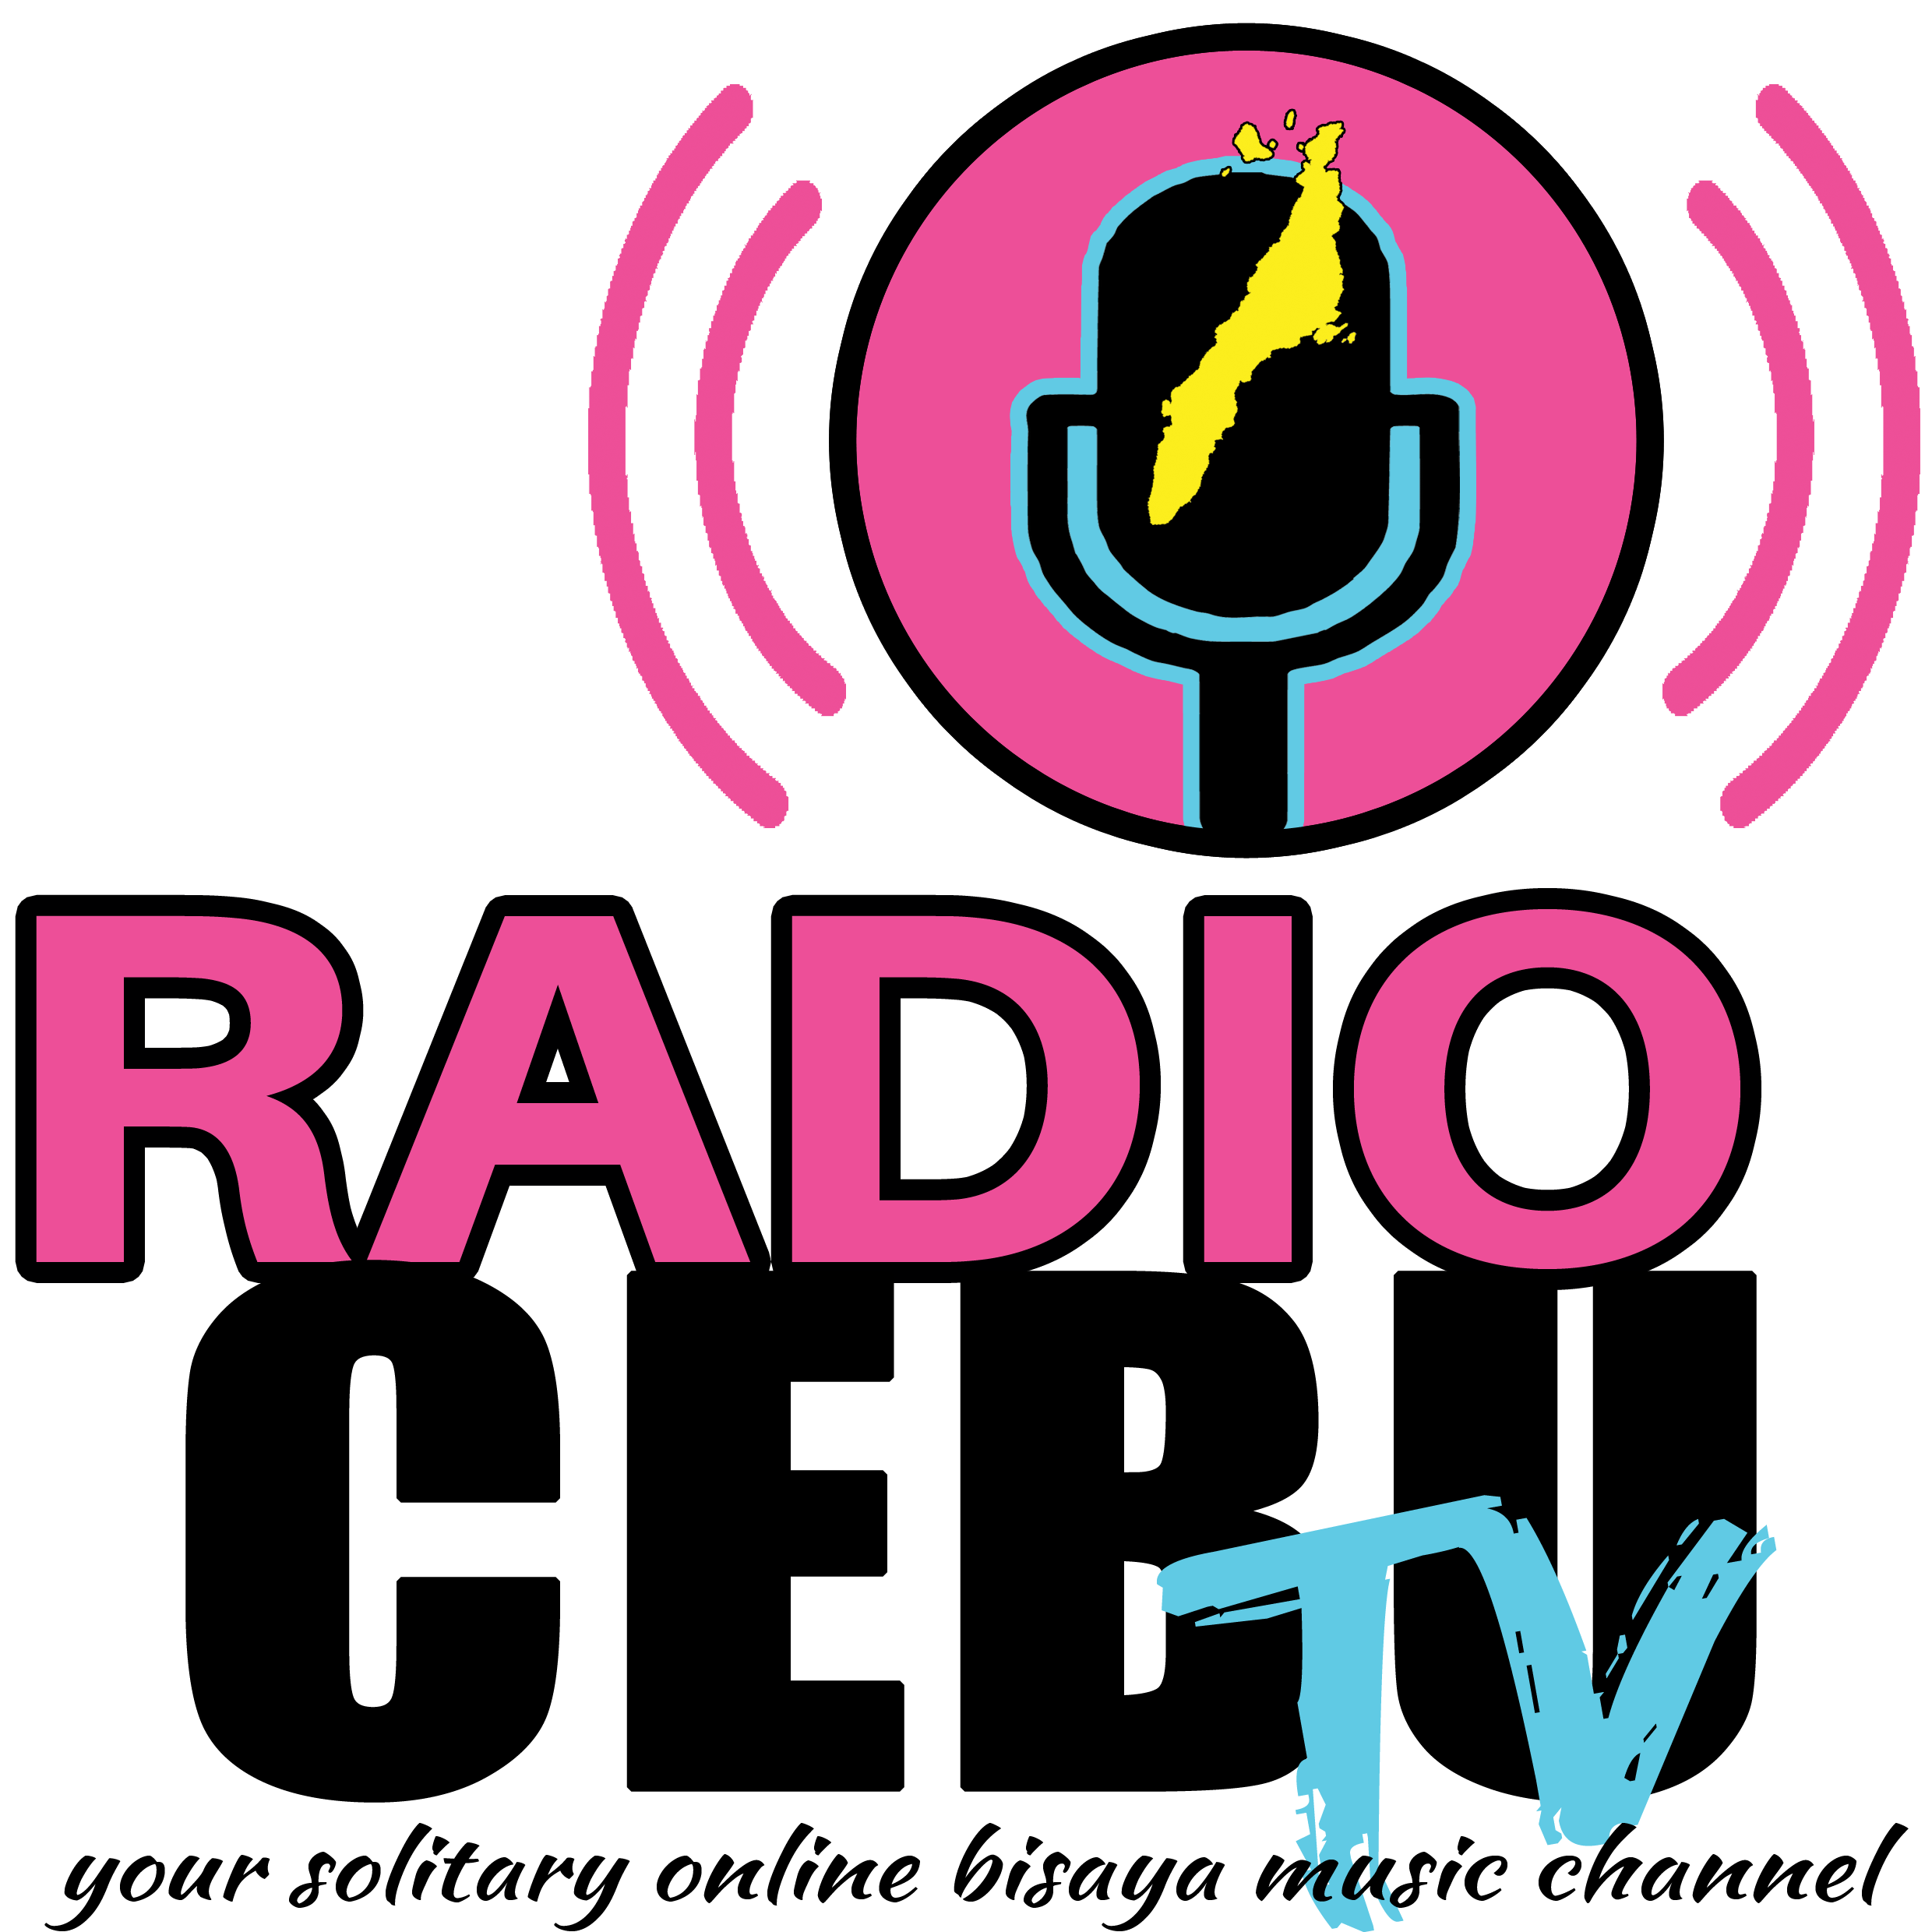 Radio Cebu TV!